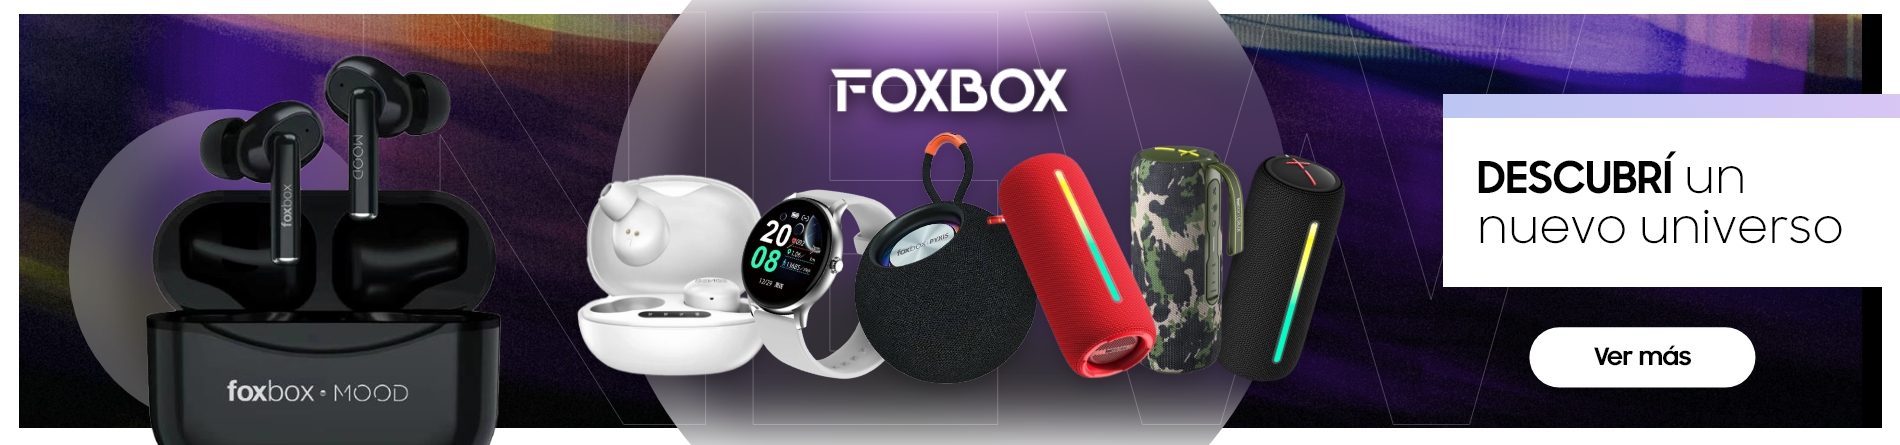 Productos Foxbox